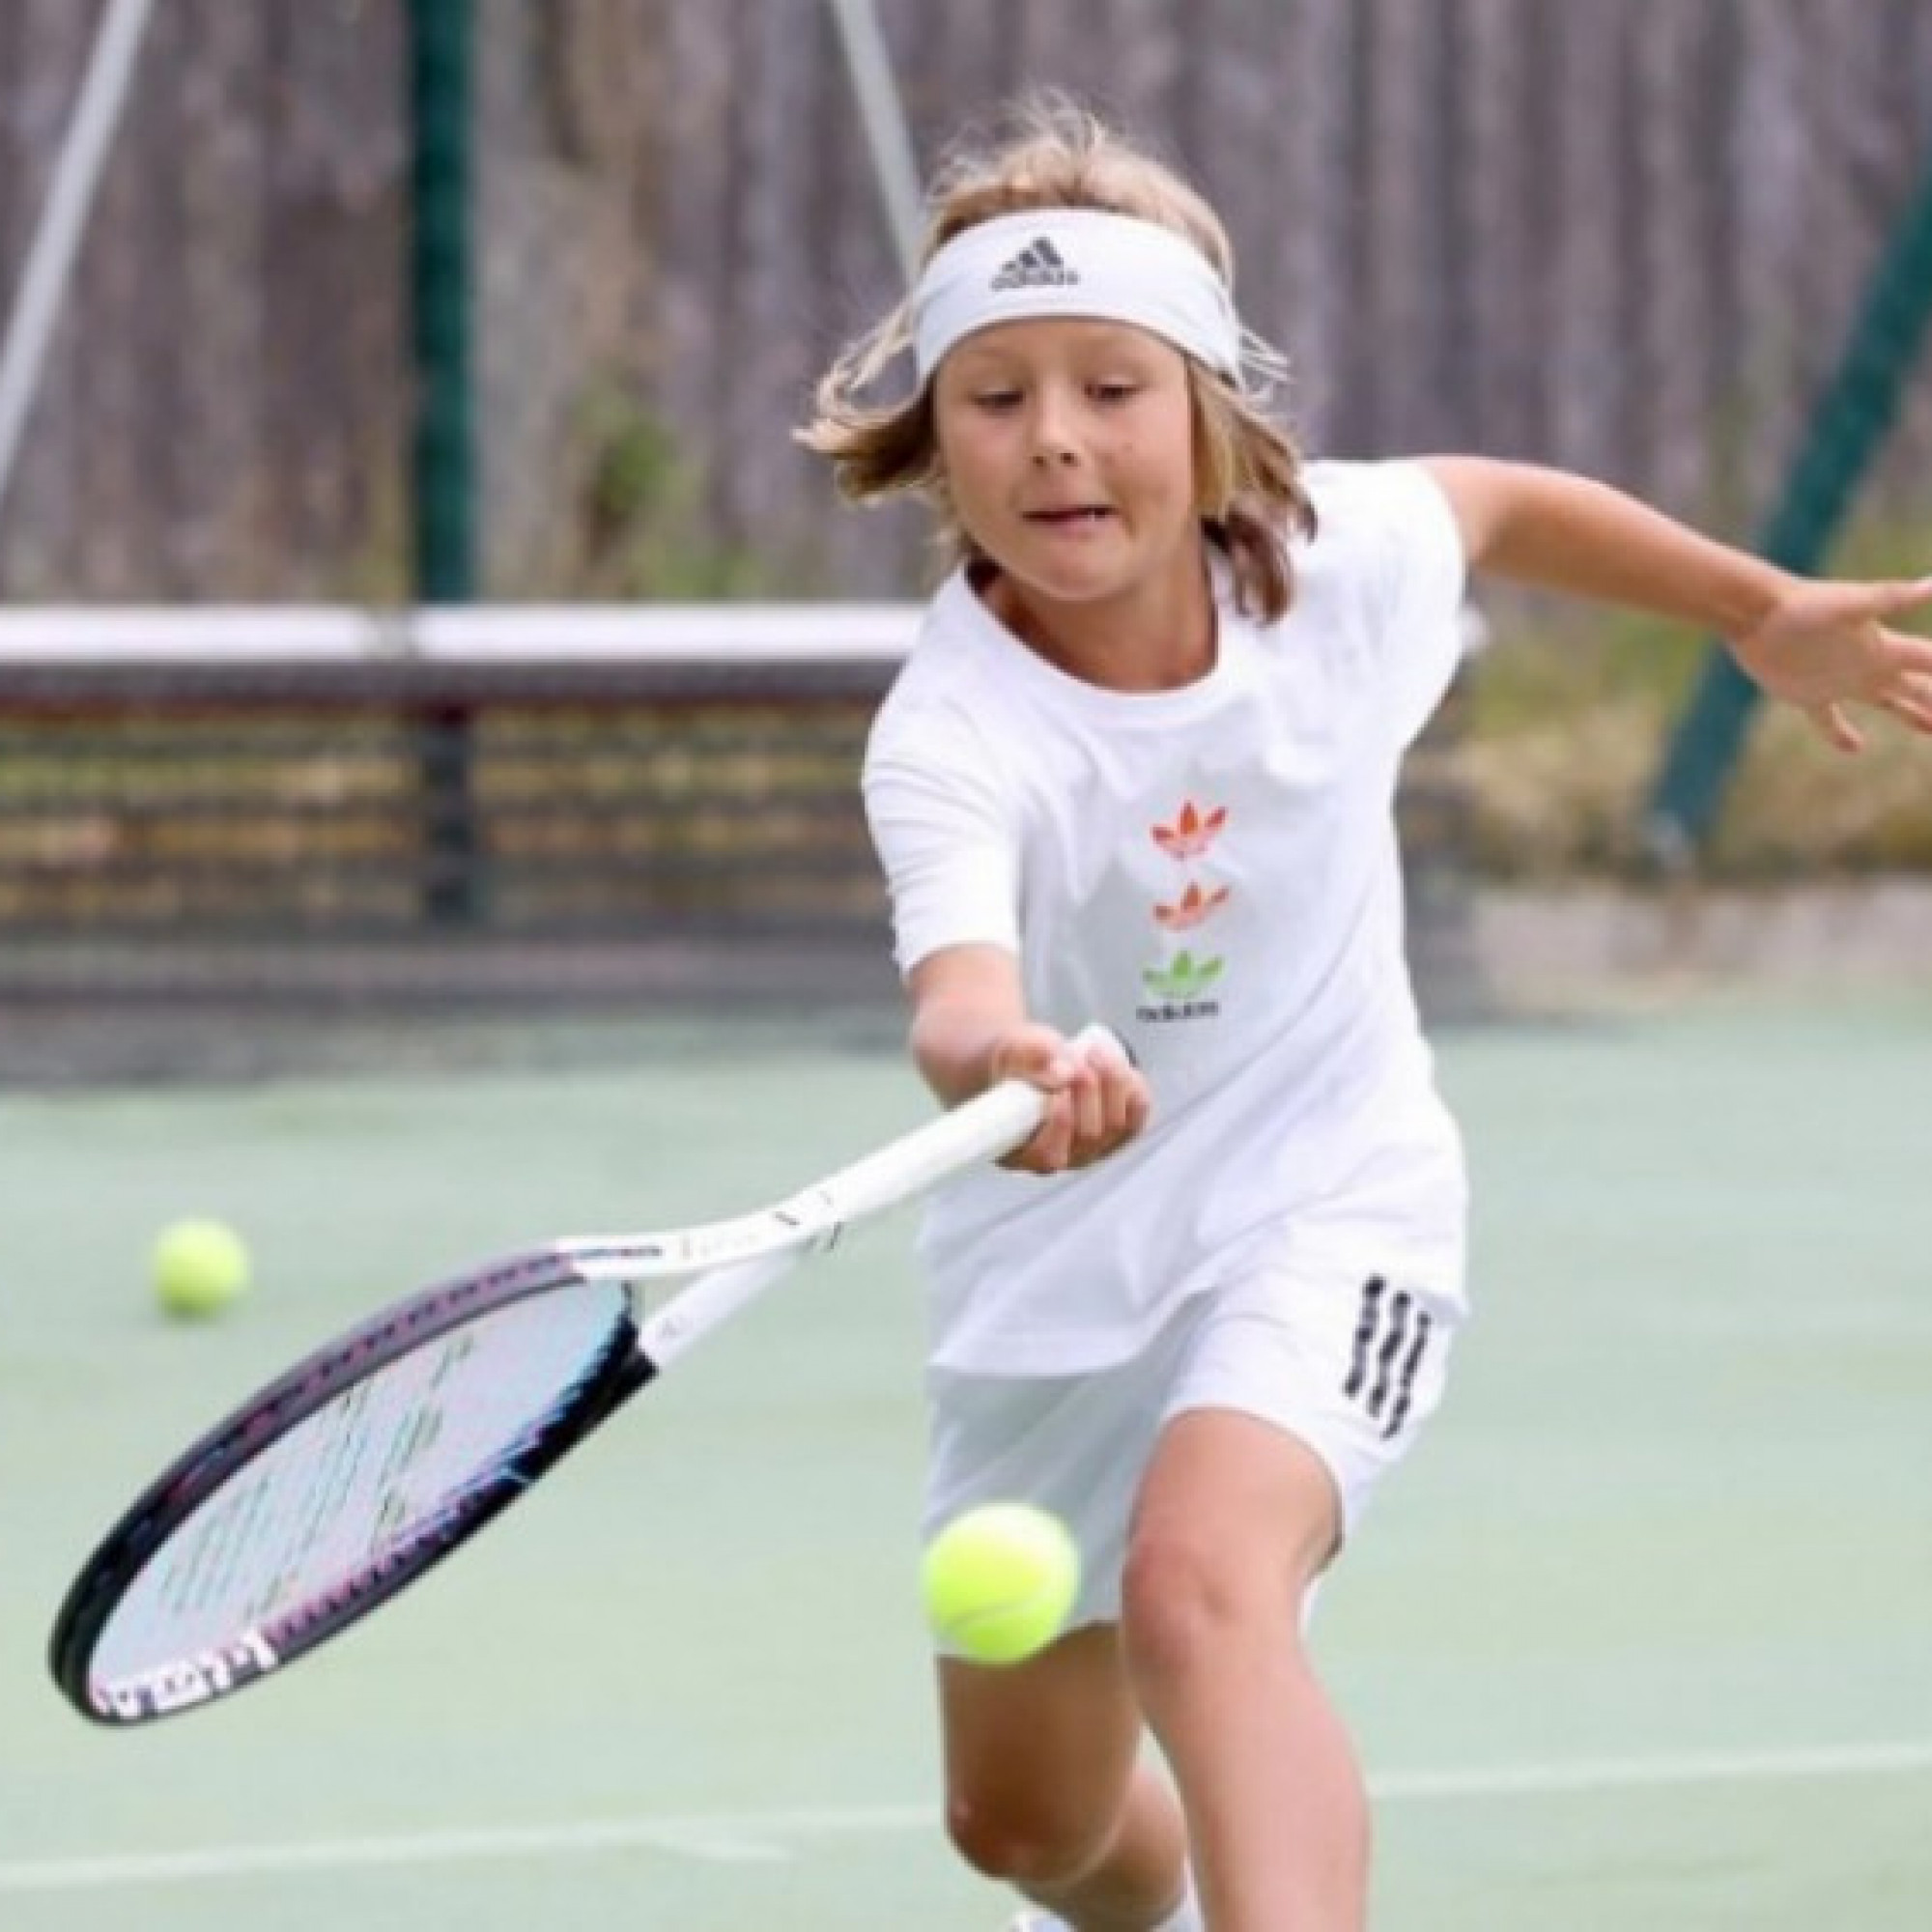  - "Thần đồng" tennis 9 tuổi bị cấm thi đấu sau khi thắng được người lớn